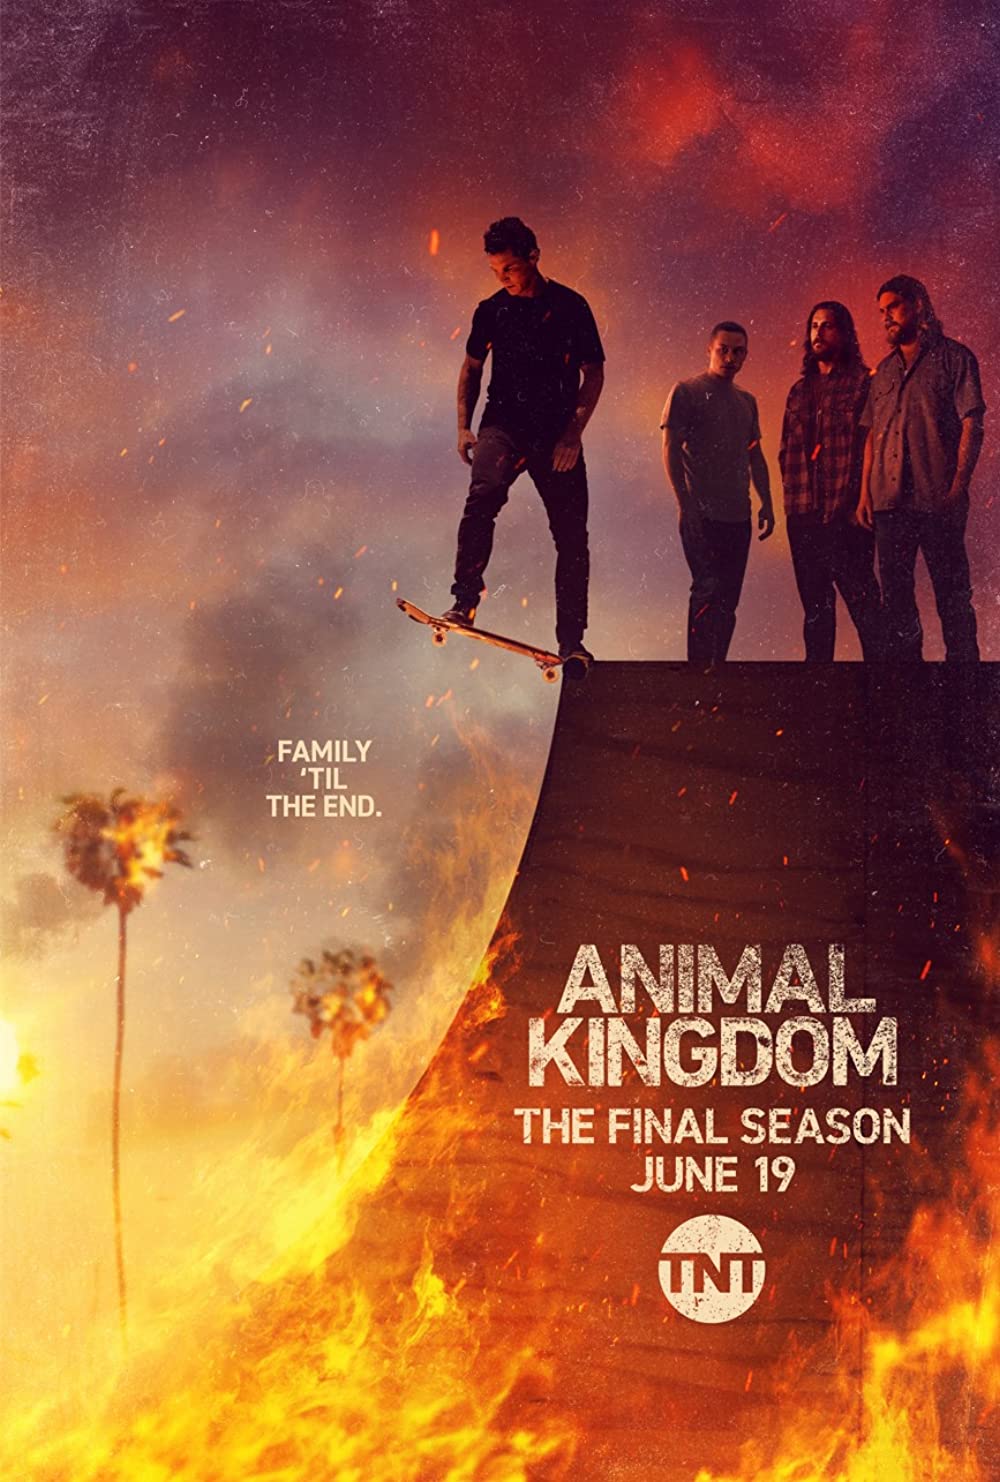 ดูหนังออนไลน์ Animal Kingdom Season 1 EP.1 แอนนิเมิล คิงด้อม ซีซั่น 1 ตอนที่ 1 (ซับไทย)